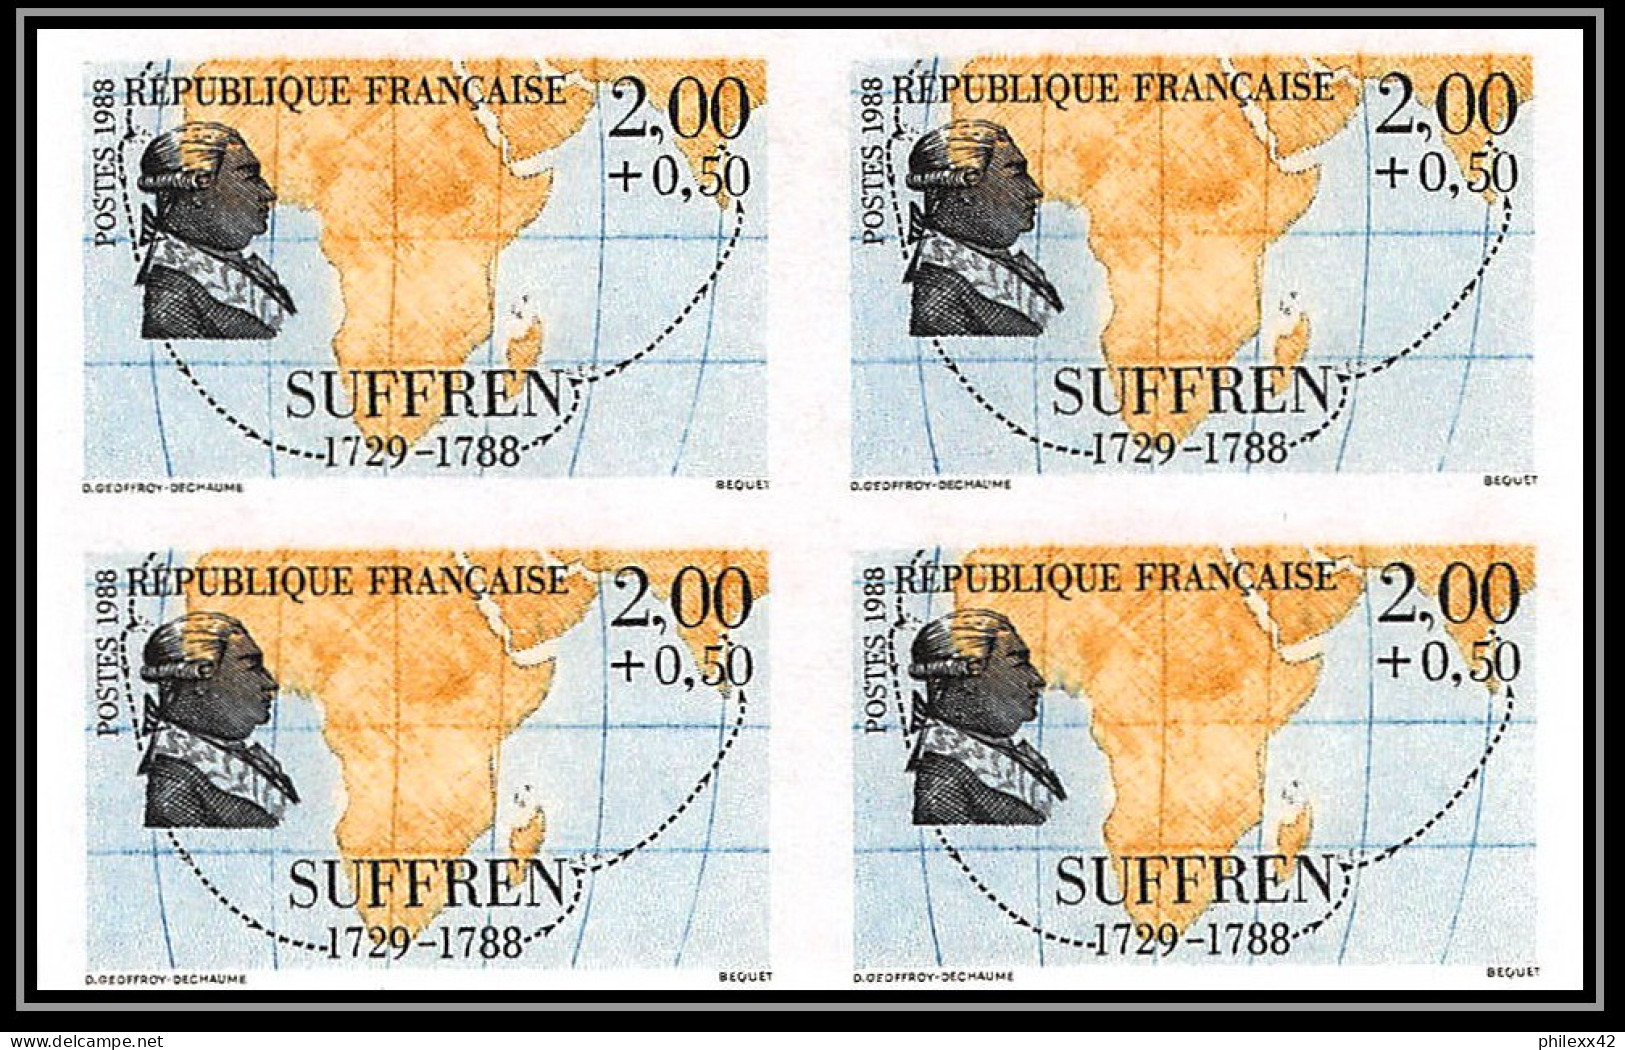 France N°2517 /2522 navigateurs francais maritime personnages 1988 Non dentelé ** MNH (Imperf) cote 440 bloc 4